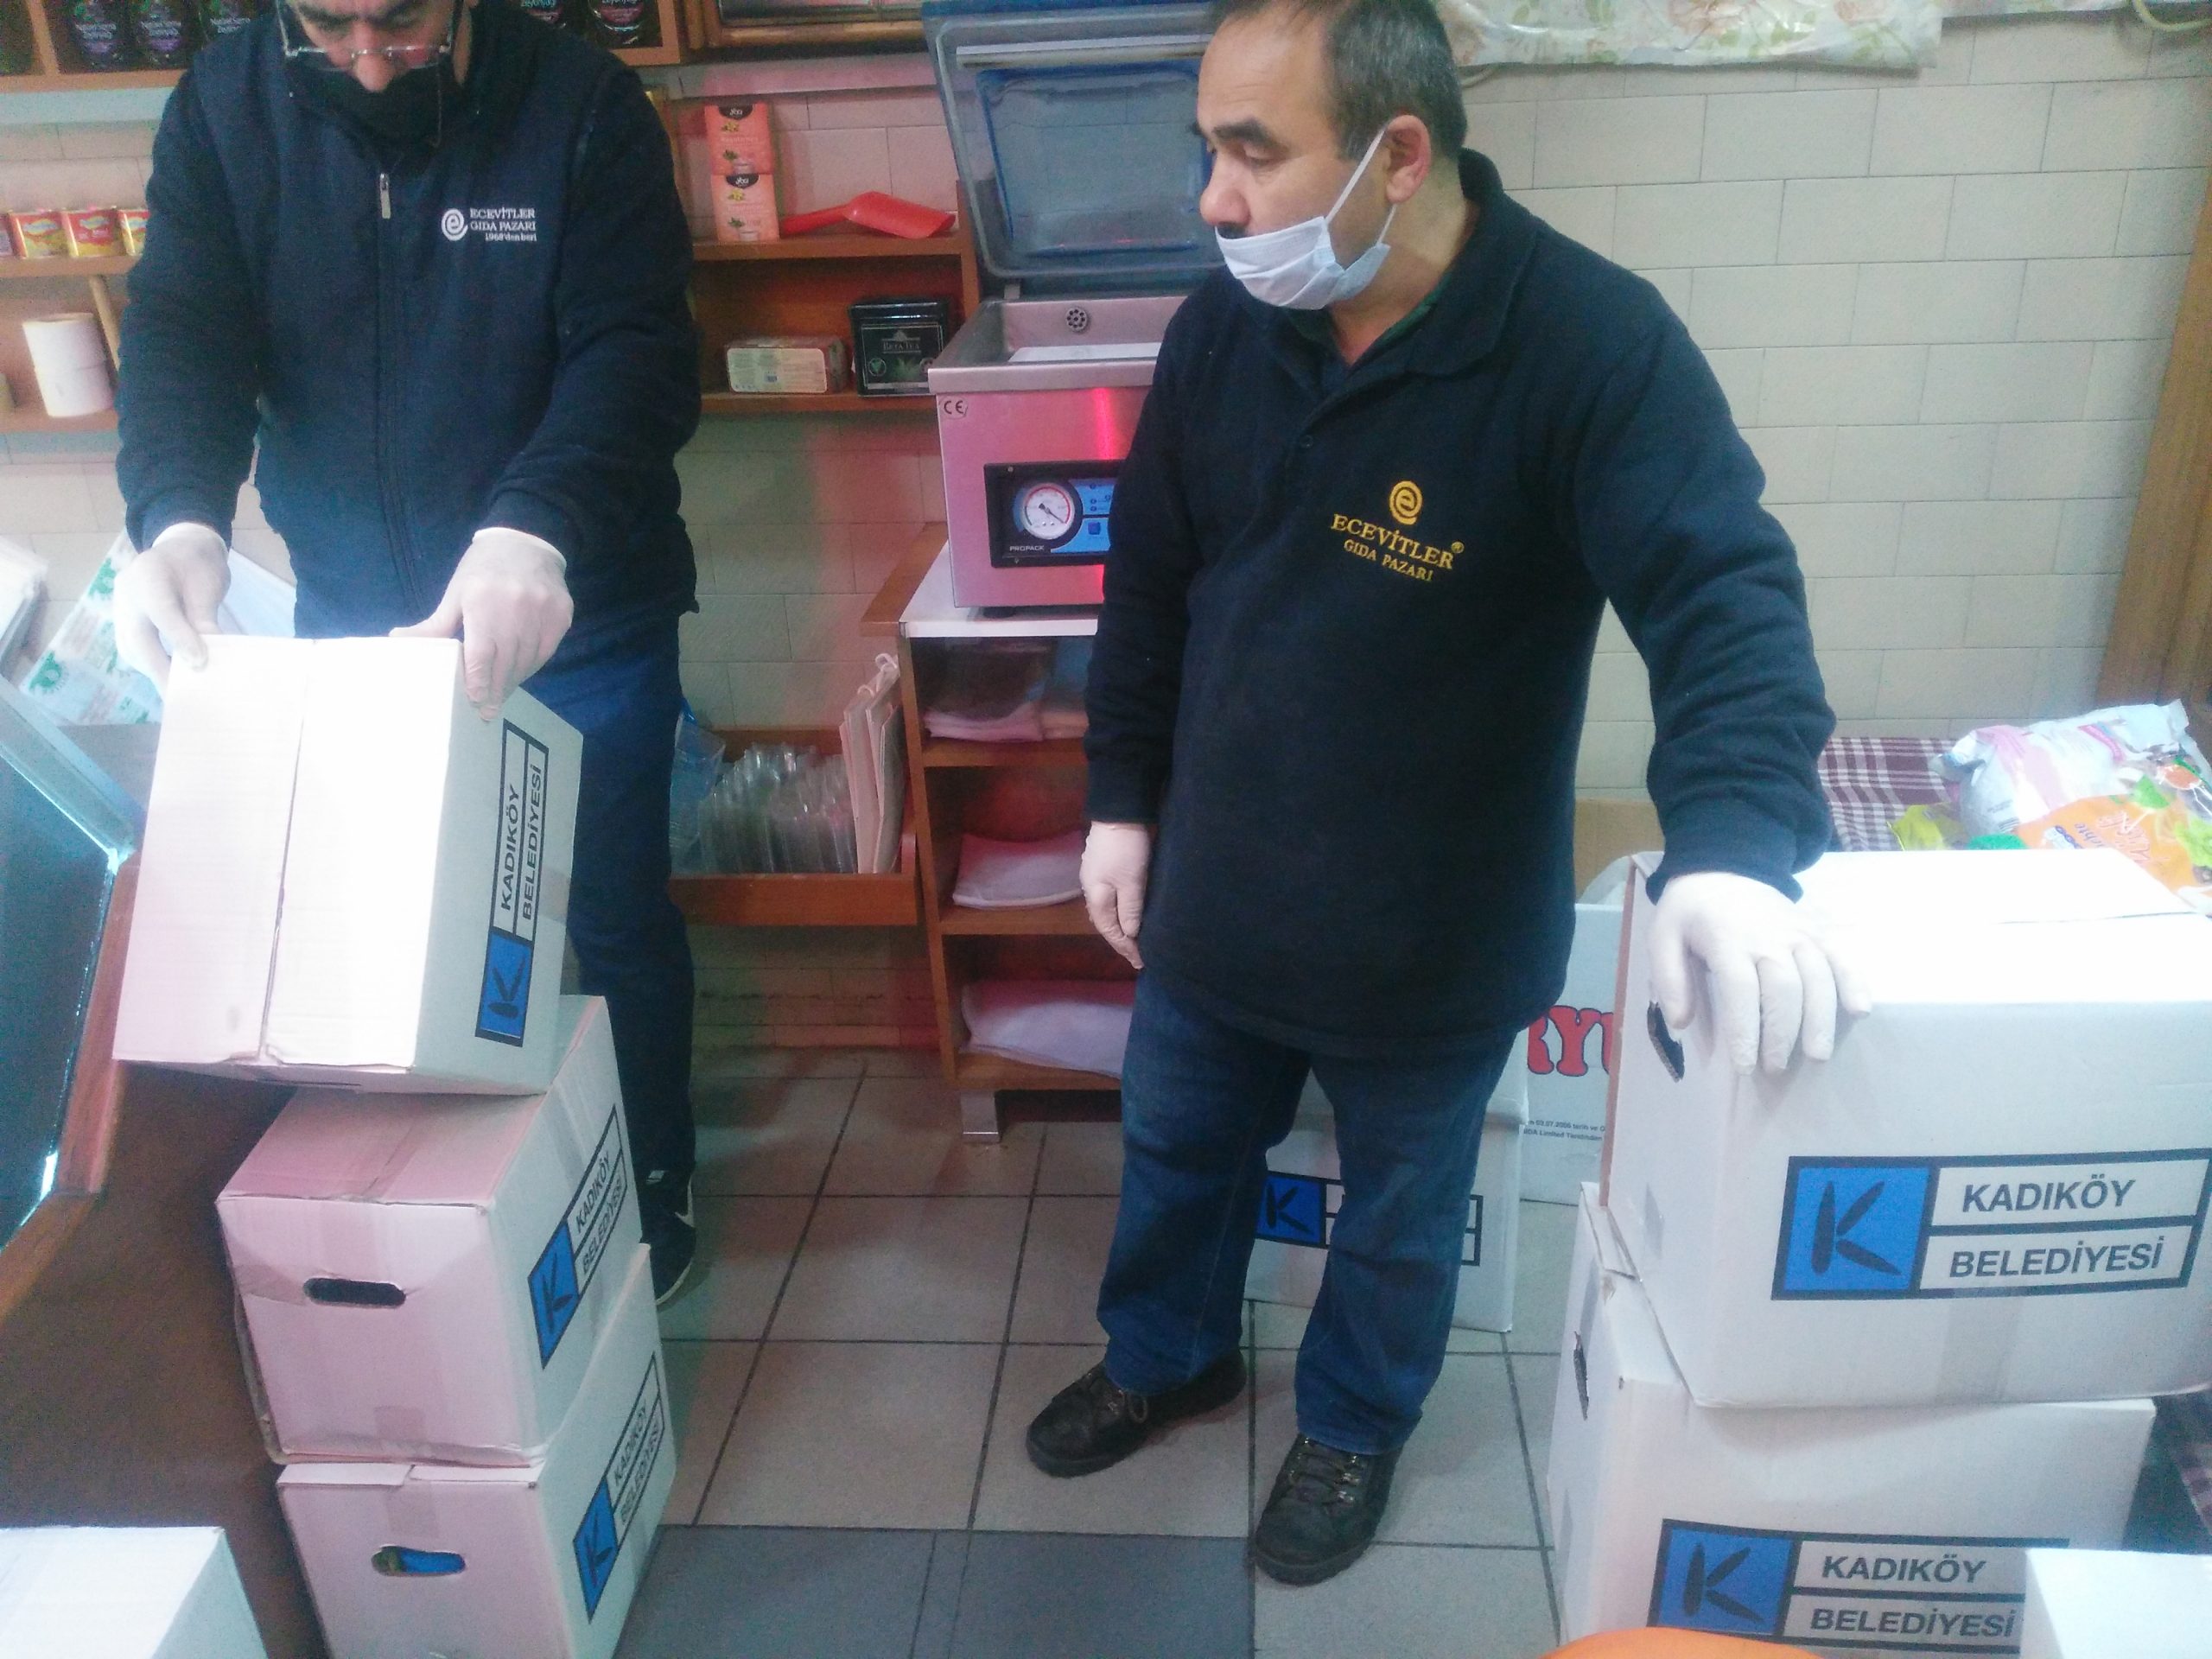 Kadıköy Belediyesi’nden gönderilen, Çarşımız Esnaflarının çalışanları için erzak dağıtımını yaptık